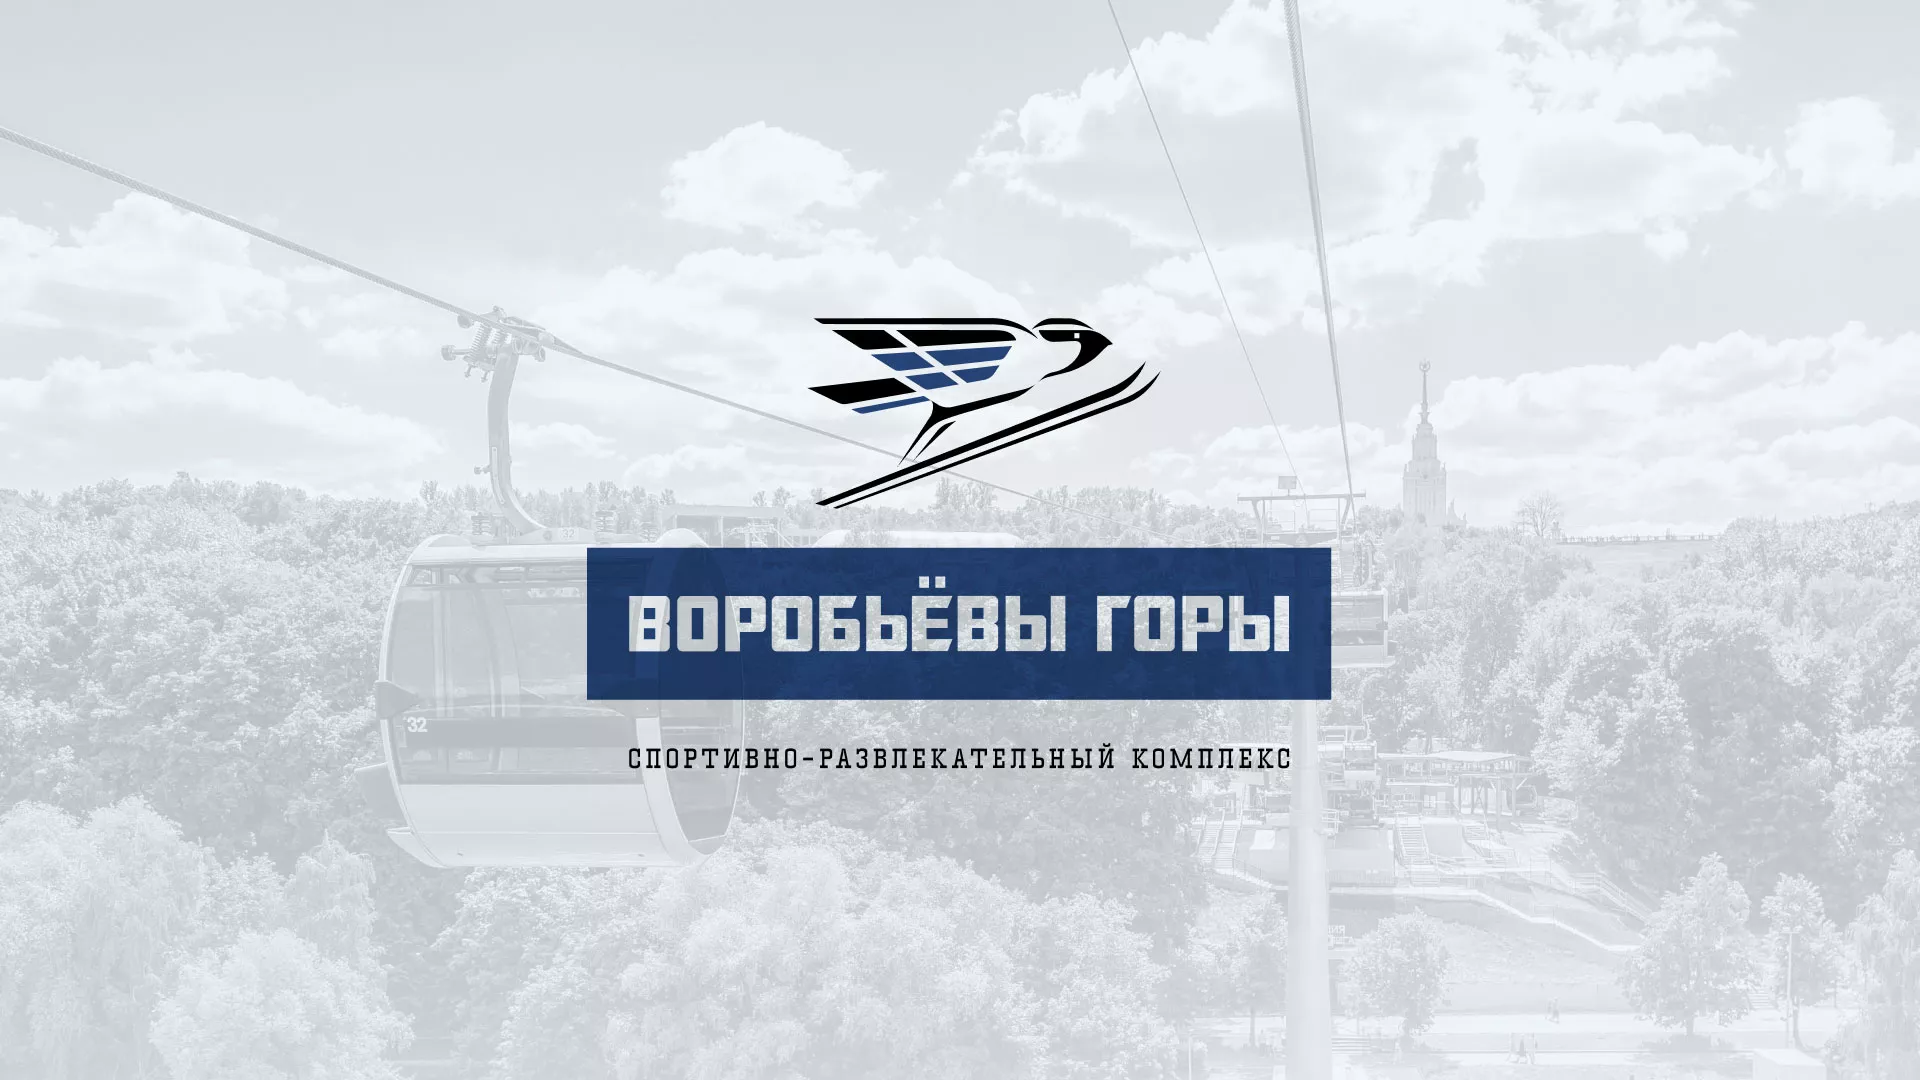 Разработка сайта в Усинске для спортивно-развлекательного комплекса «Воробьёвы горы»